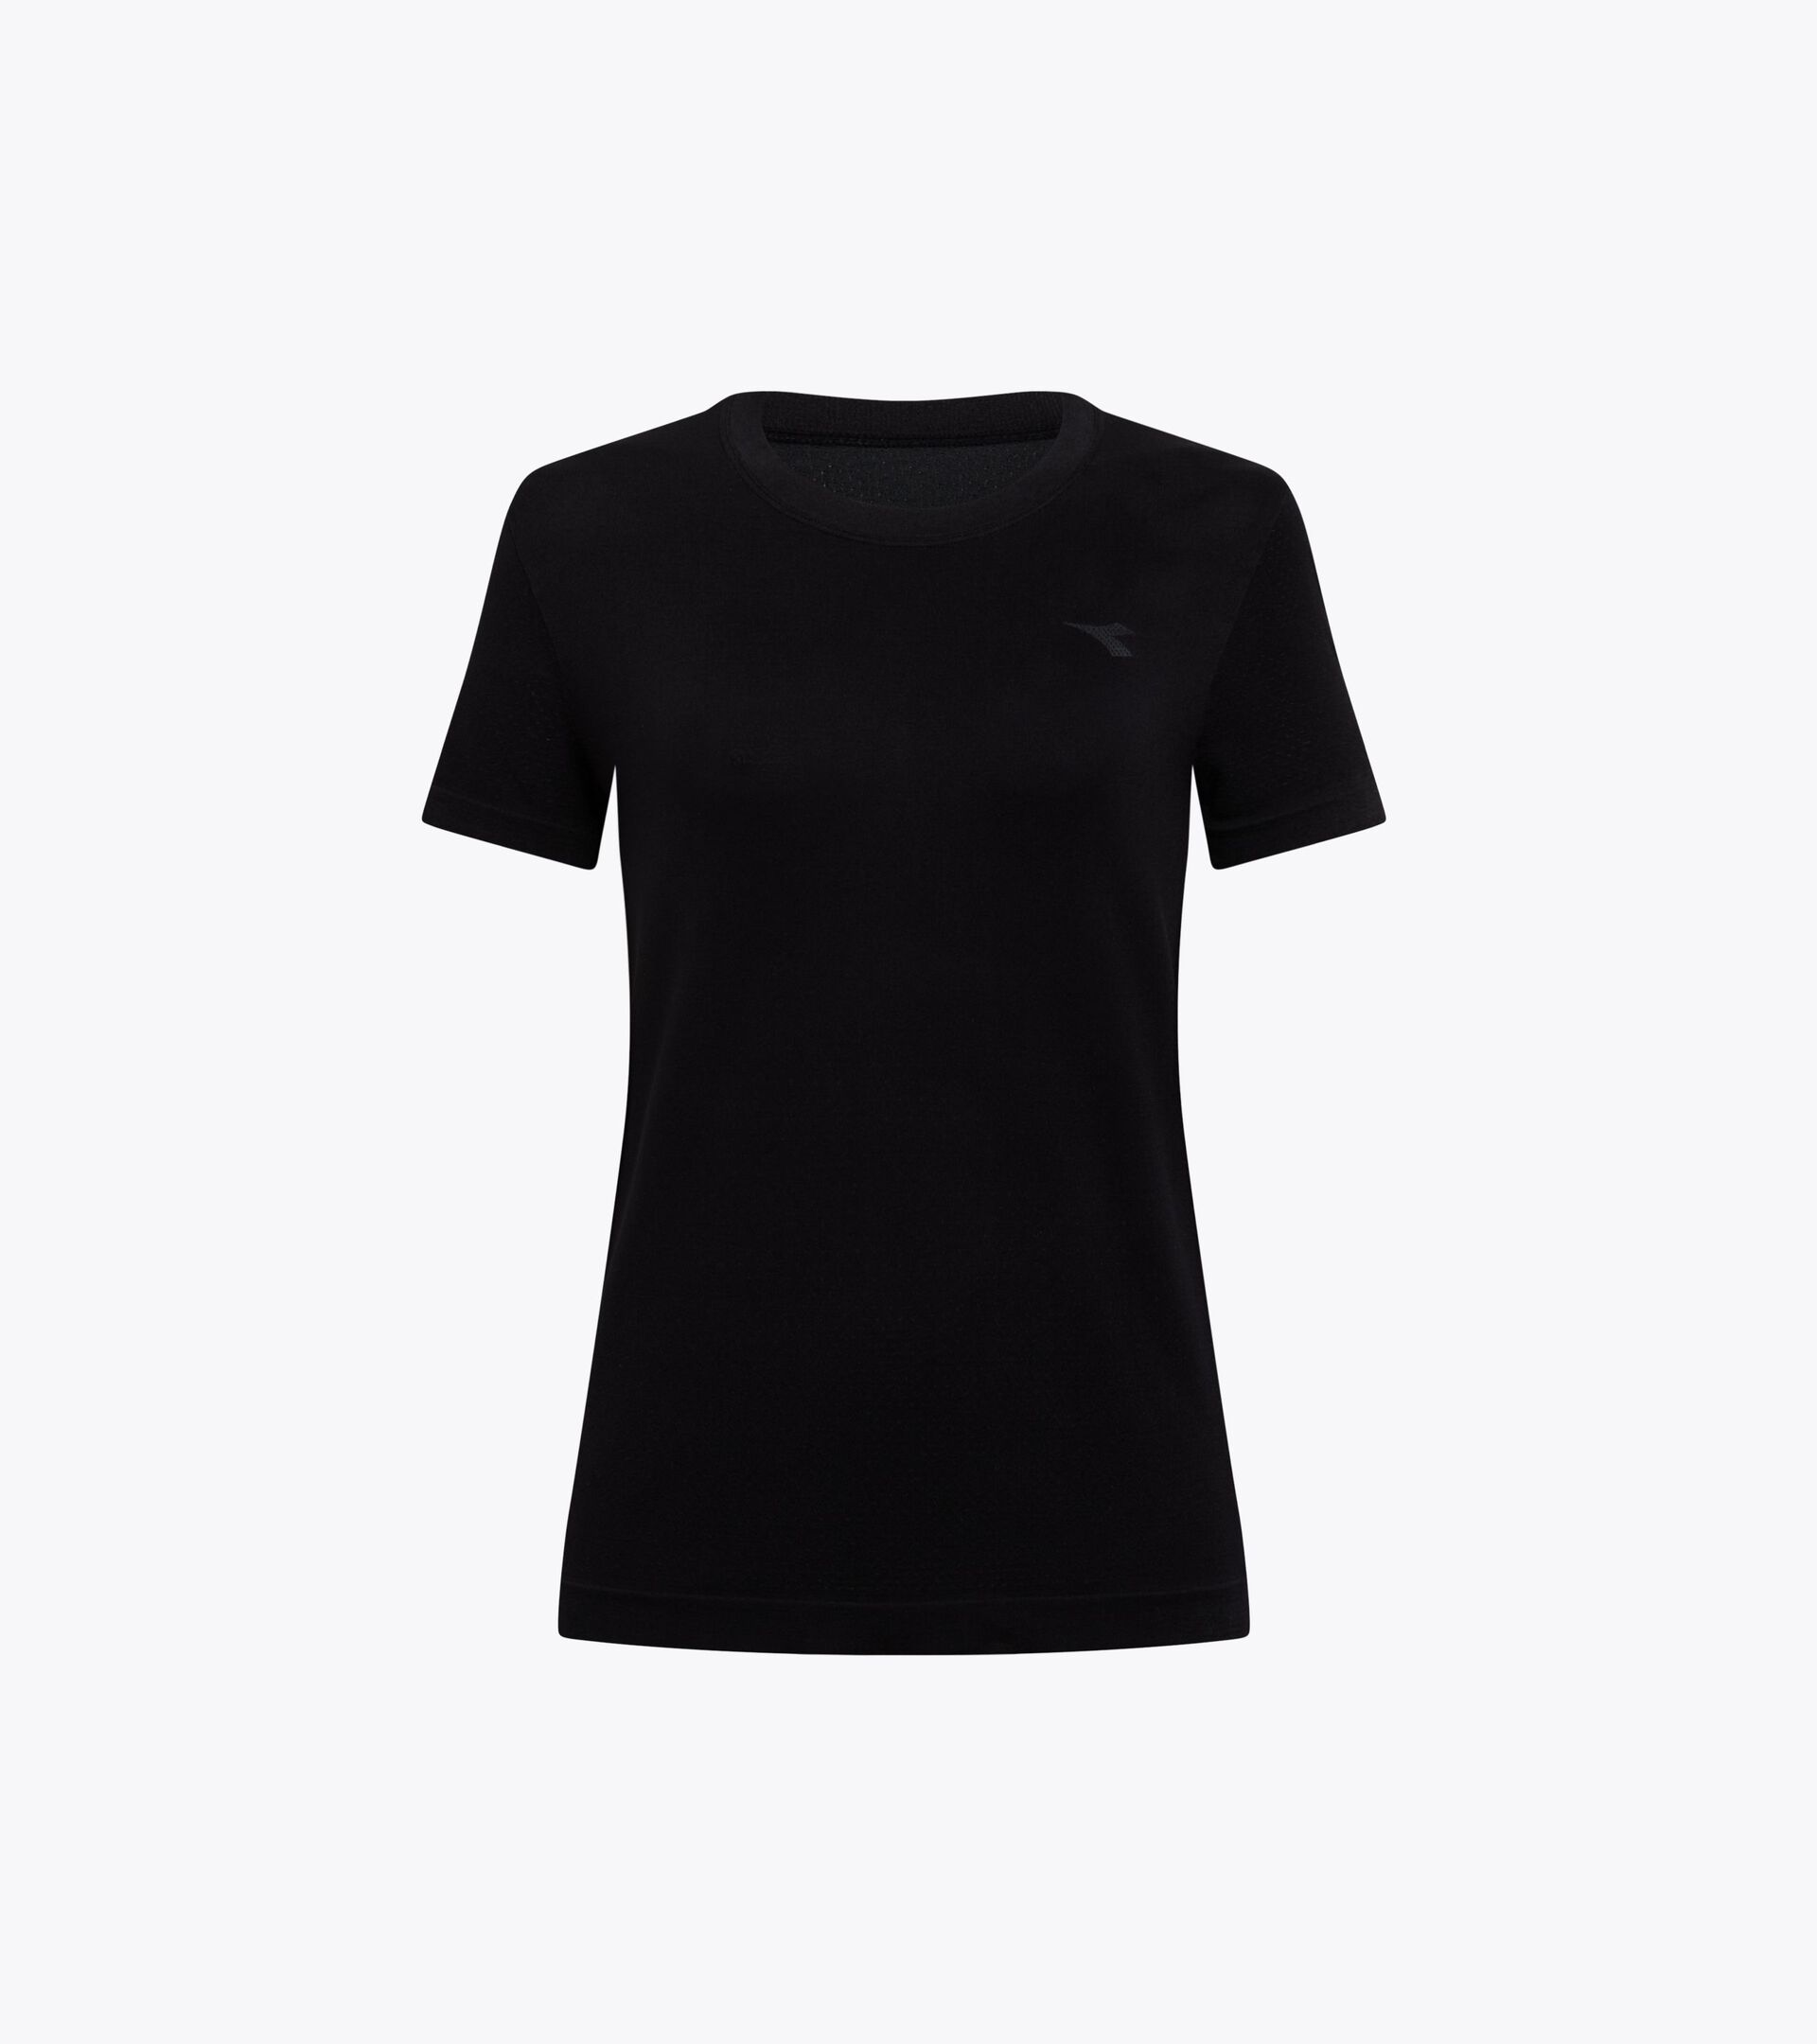 Lauf-T-Shirt ohne Nähte - made in Italy - Damen L. SS T-SHIRT SKIN FRIENDLY SCHWARZ - Diadora